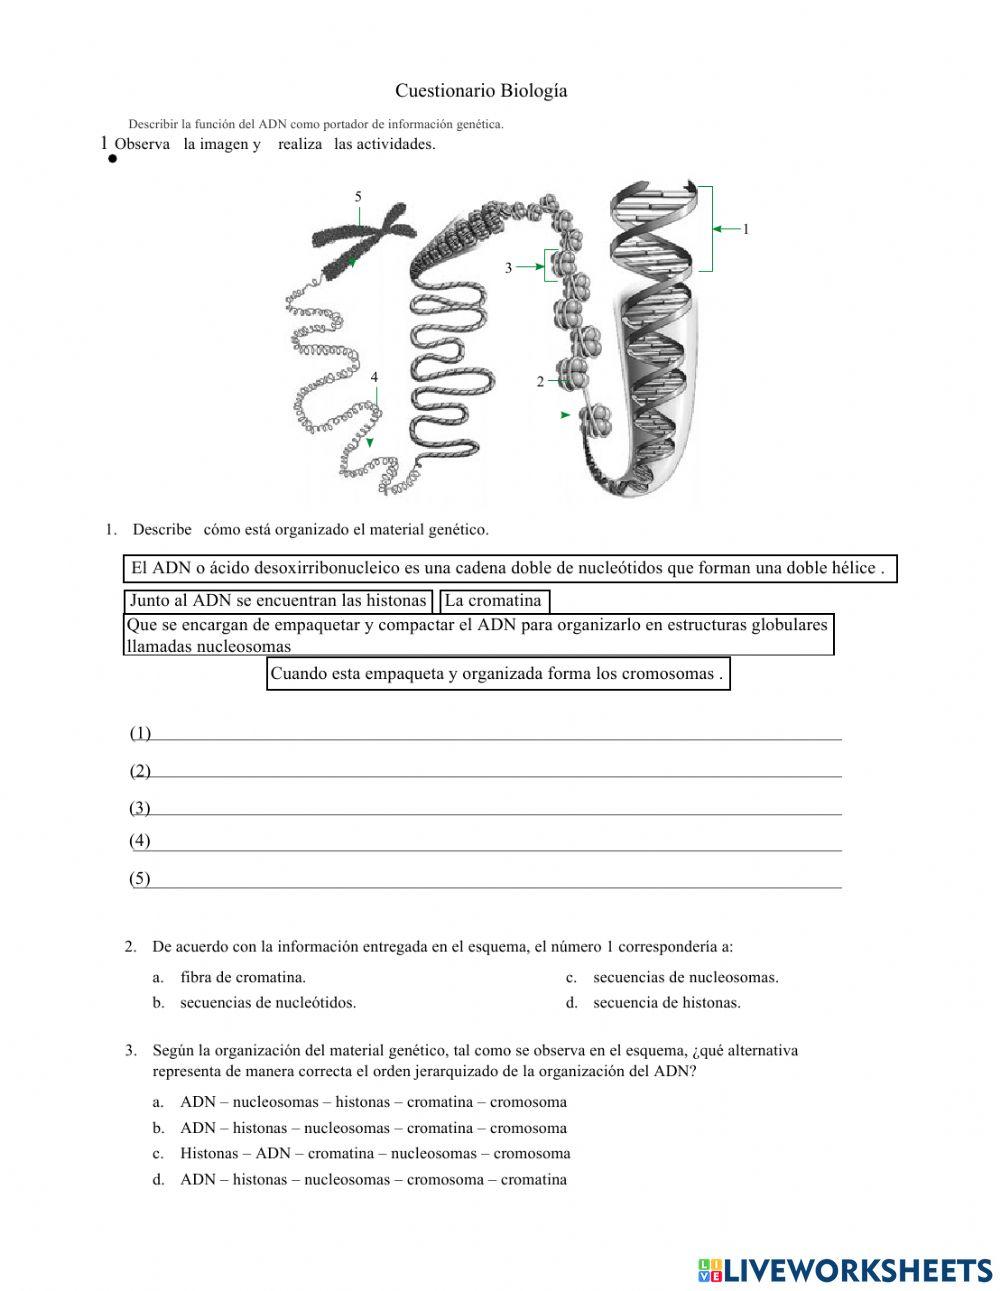 Cuestionario de Biología 2